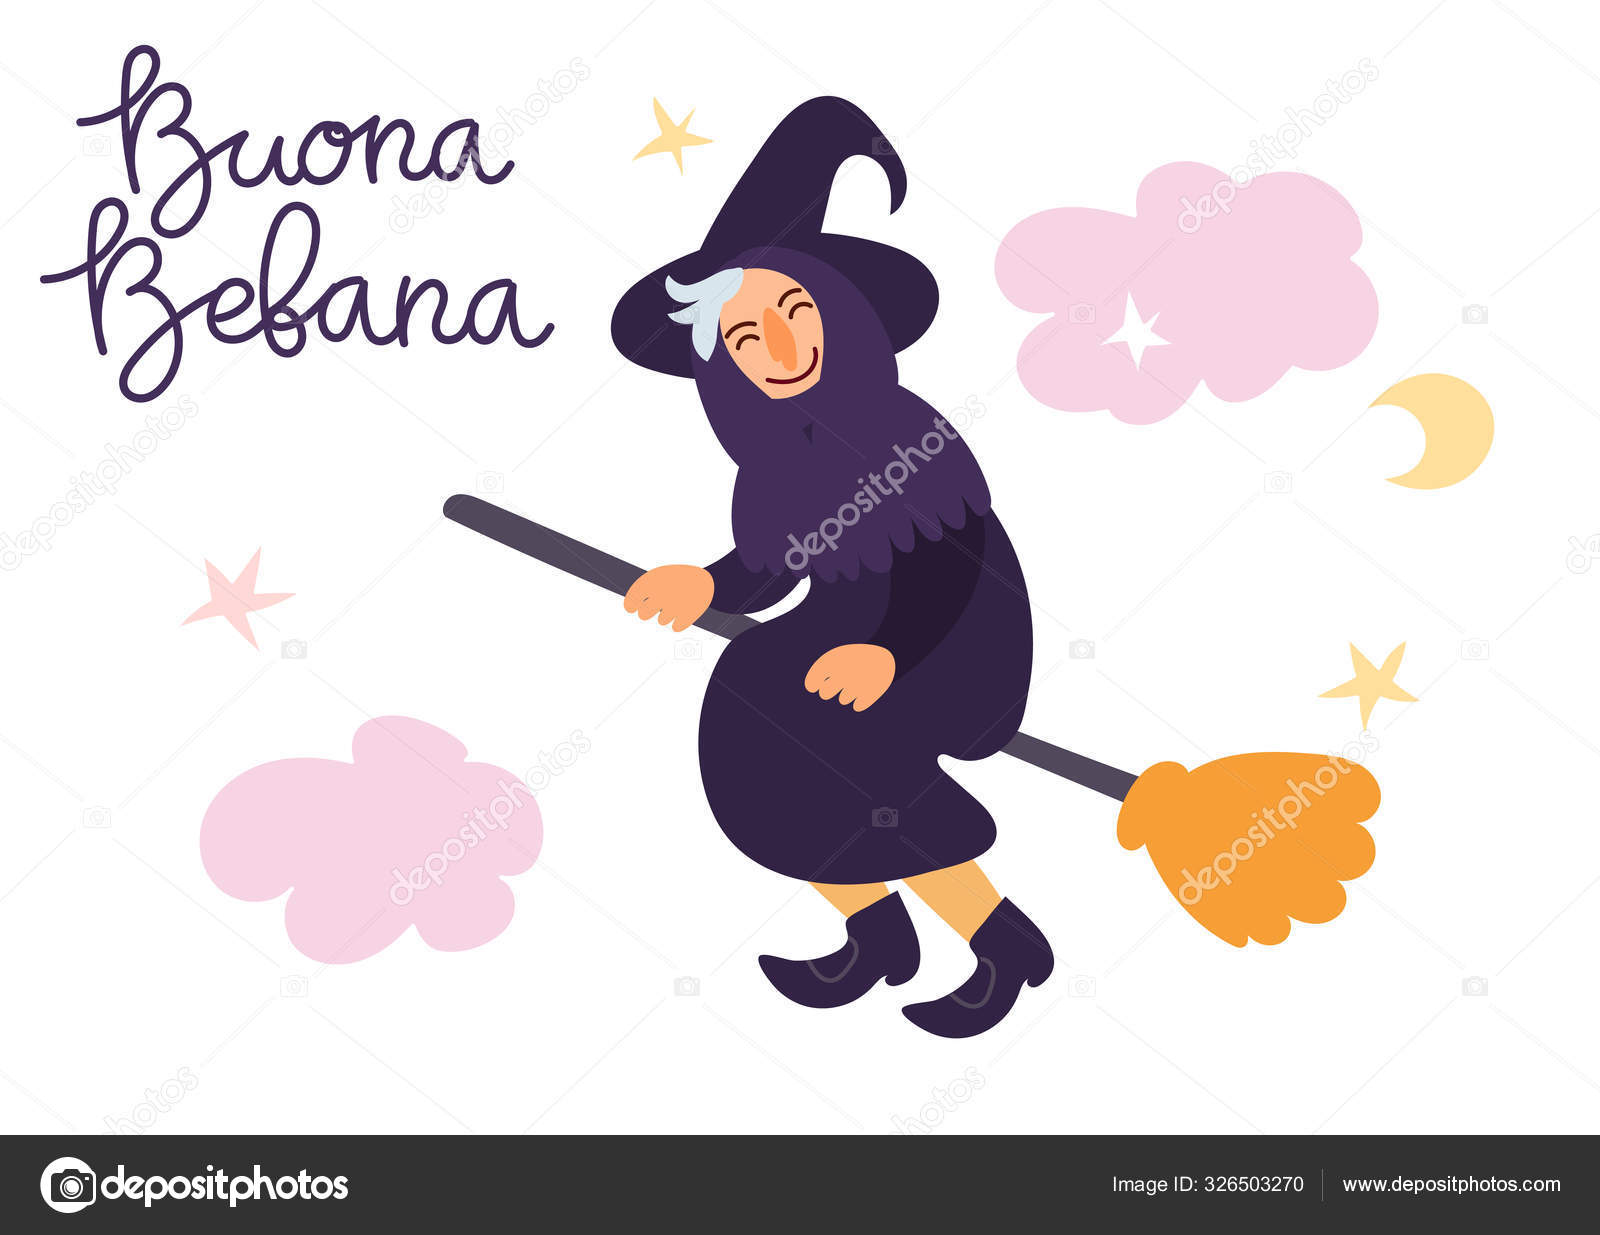 Buona befana tradução italiana happy befana cute witch befana